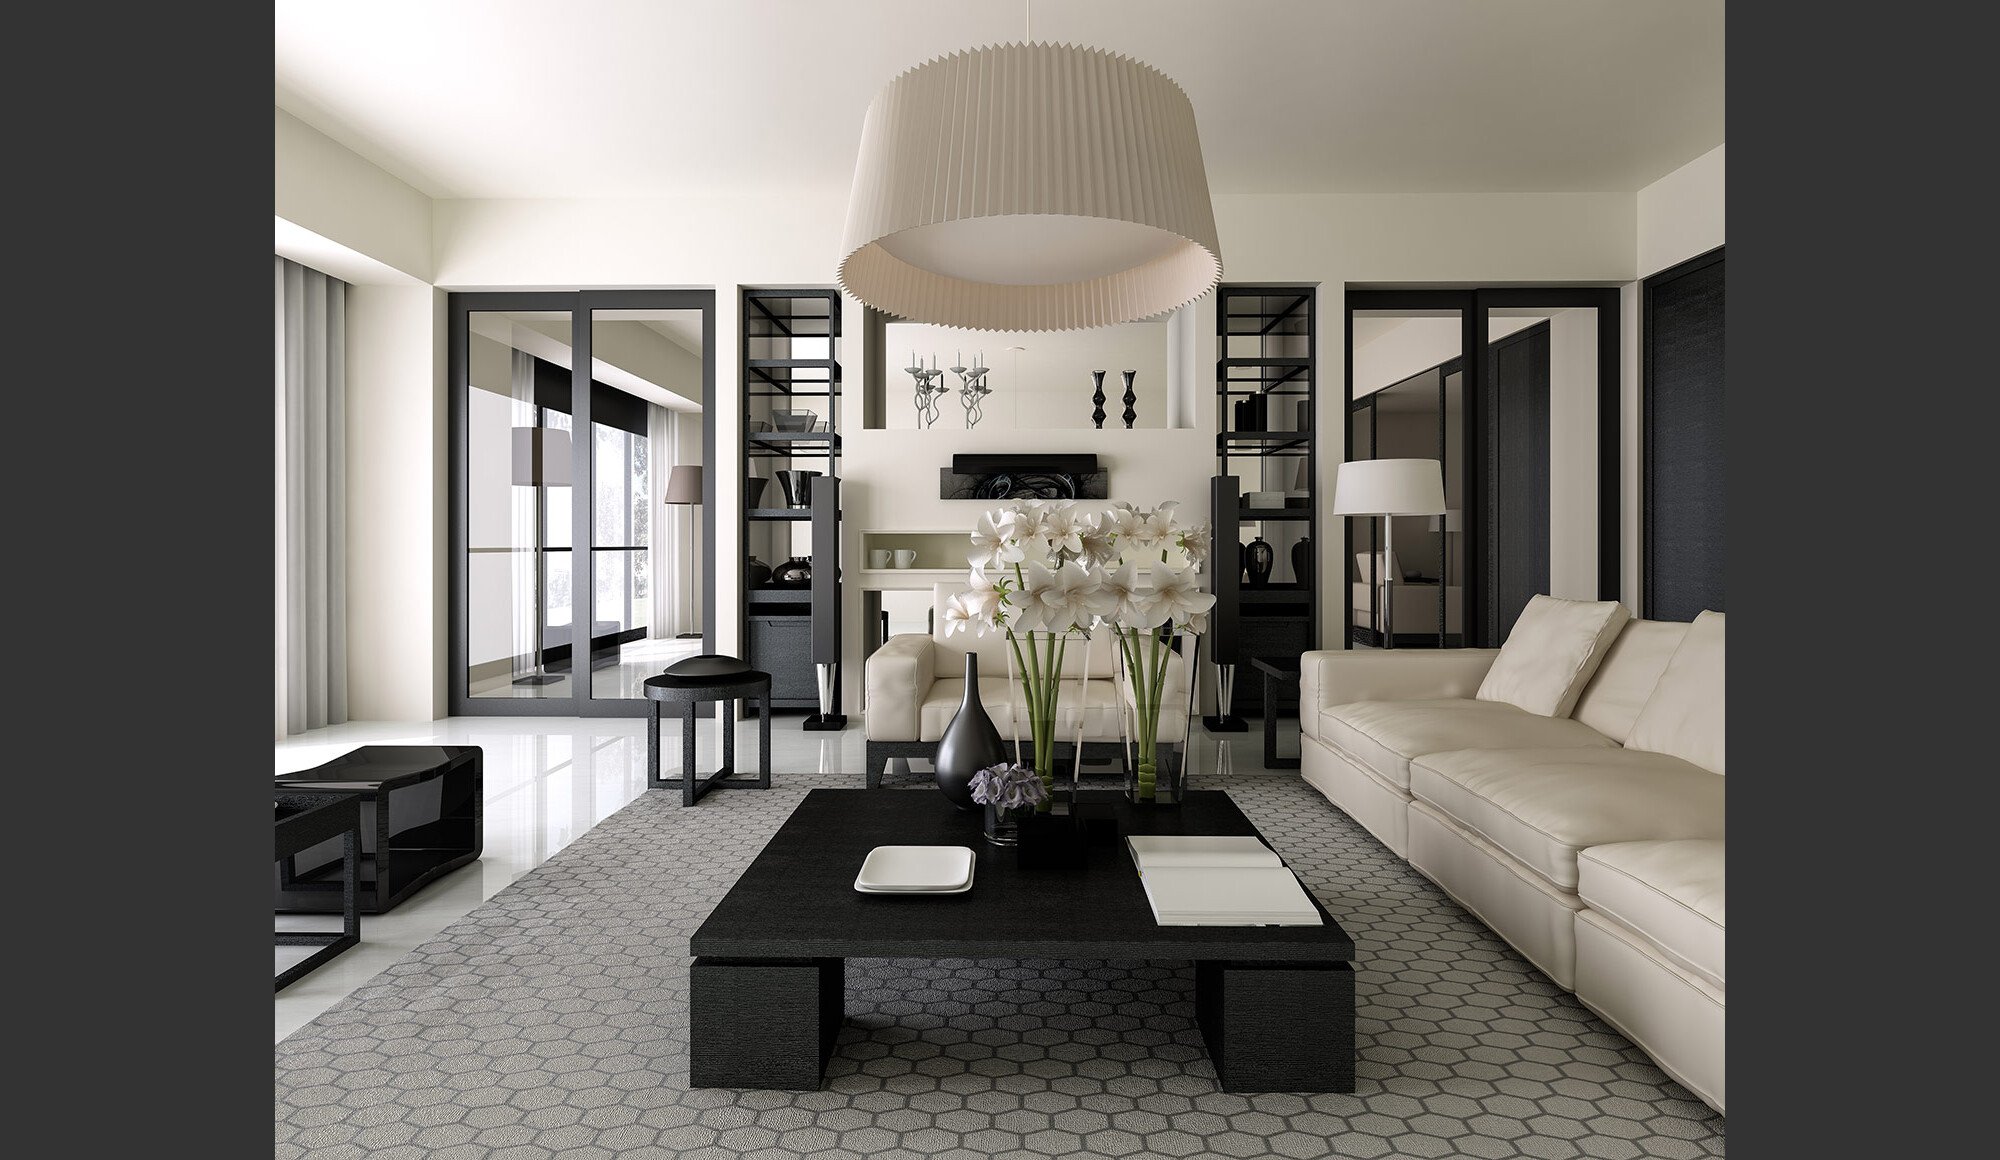 Online Living Room Design interior design service